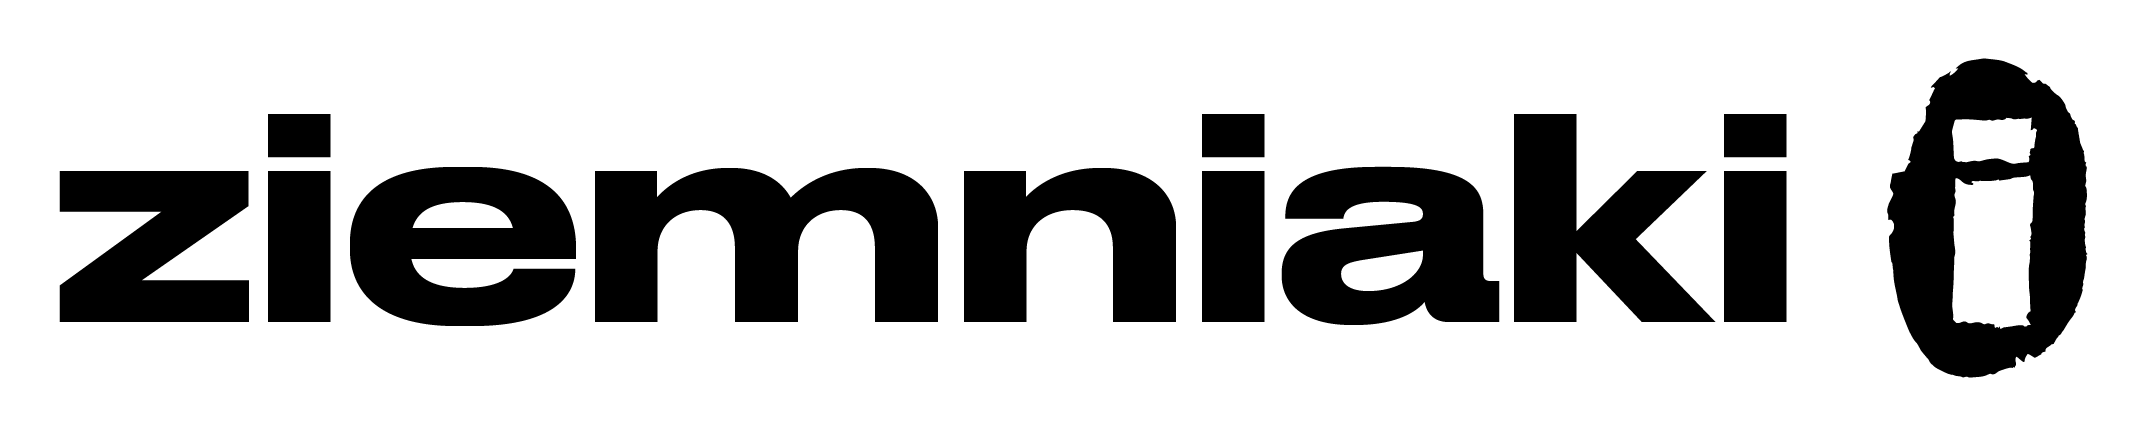 Fundacja Ziemniaki i logo